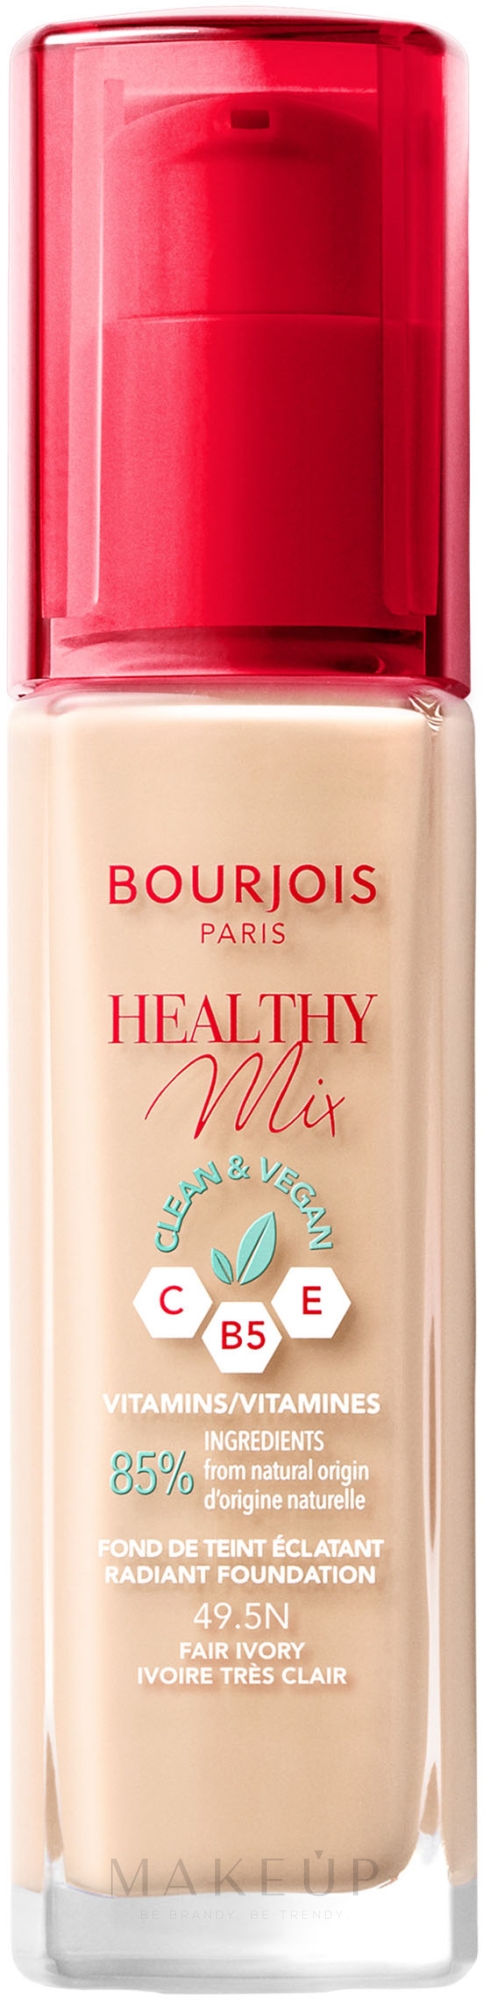 Bourjois Healthy Mix Clean & Vegan Foundation - Feuchtigkeitsspendende Foundation — Bild 49.5N - Fair Ivory